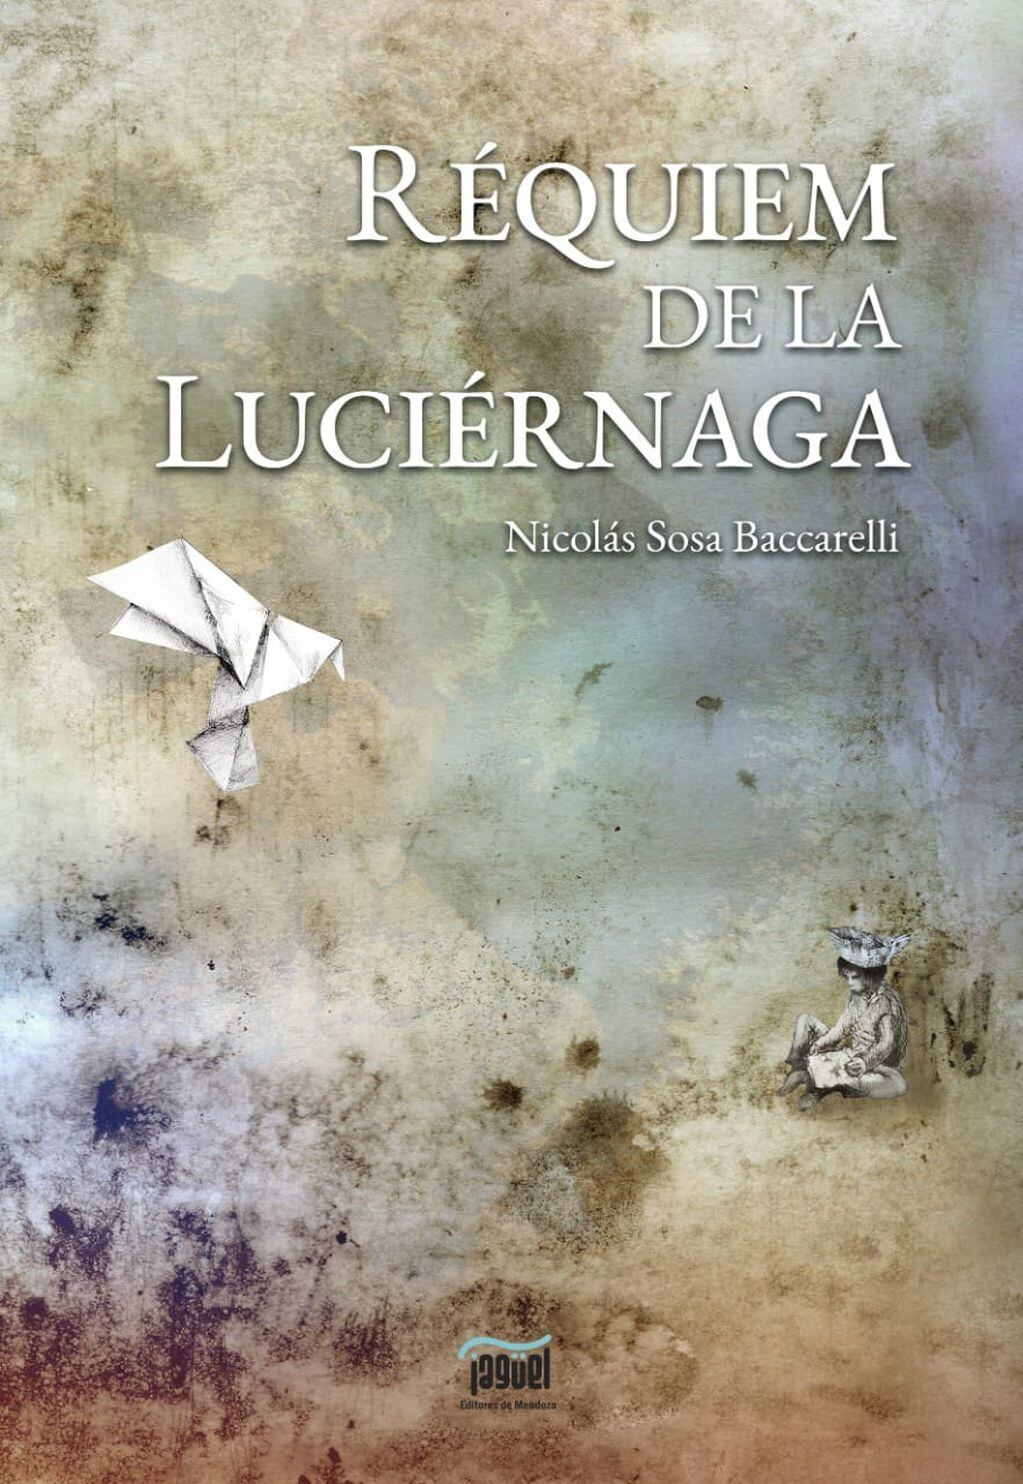 El libro de Nicolás Sosa Baccarelli que presenta El Jagüel.